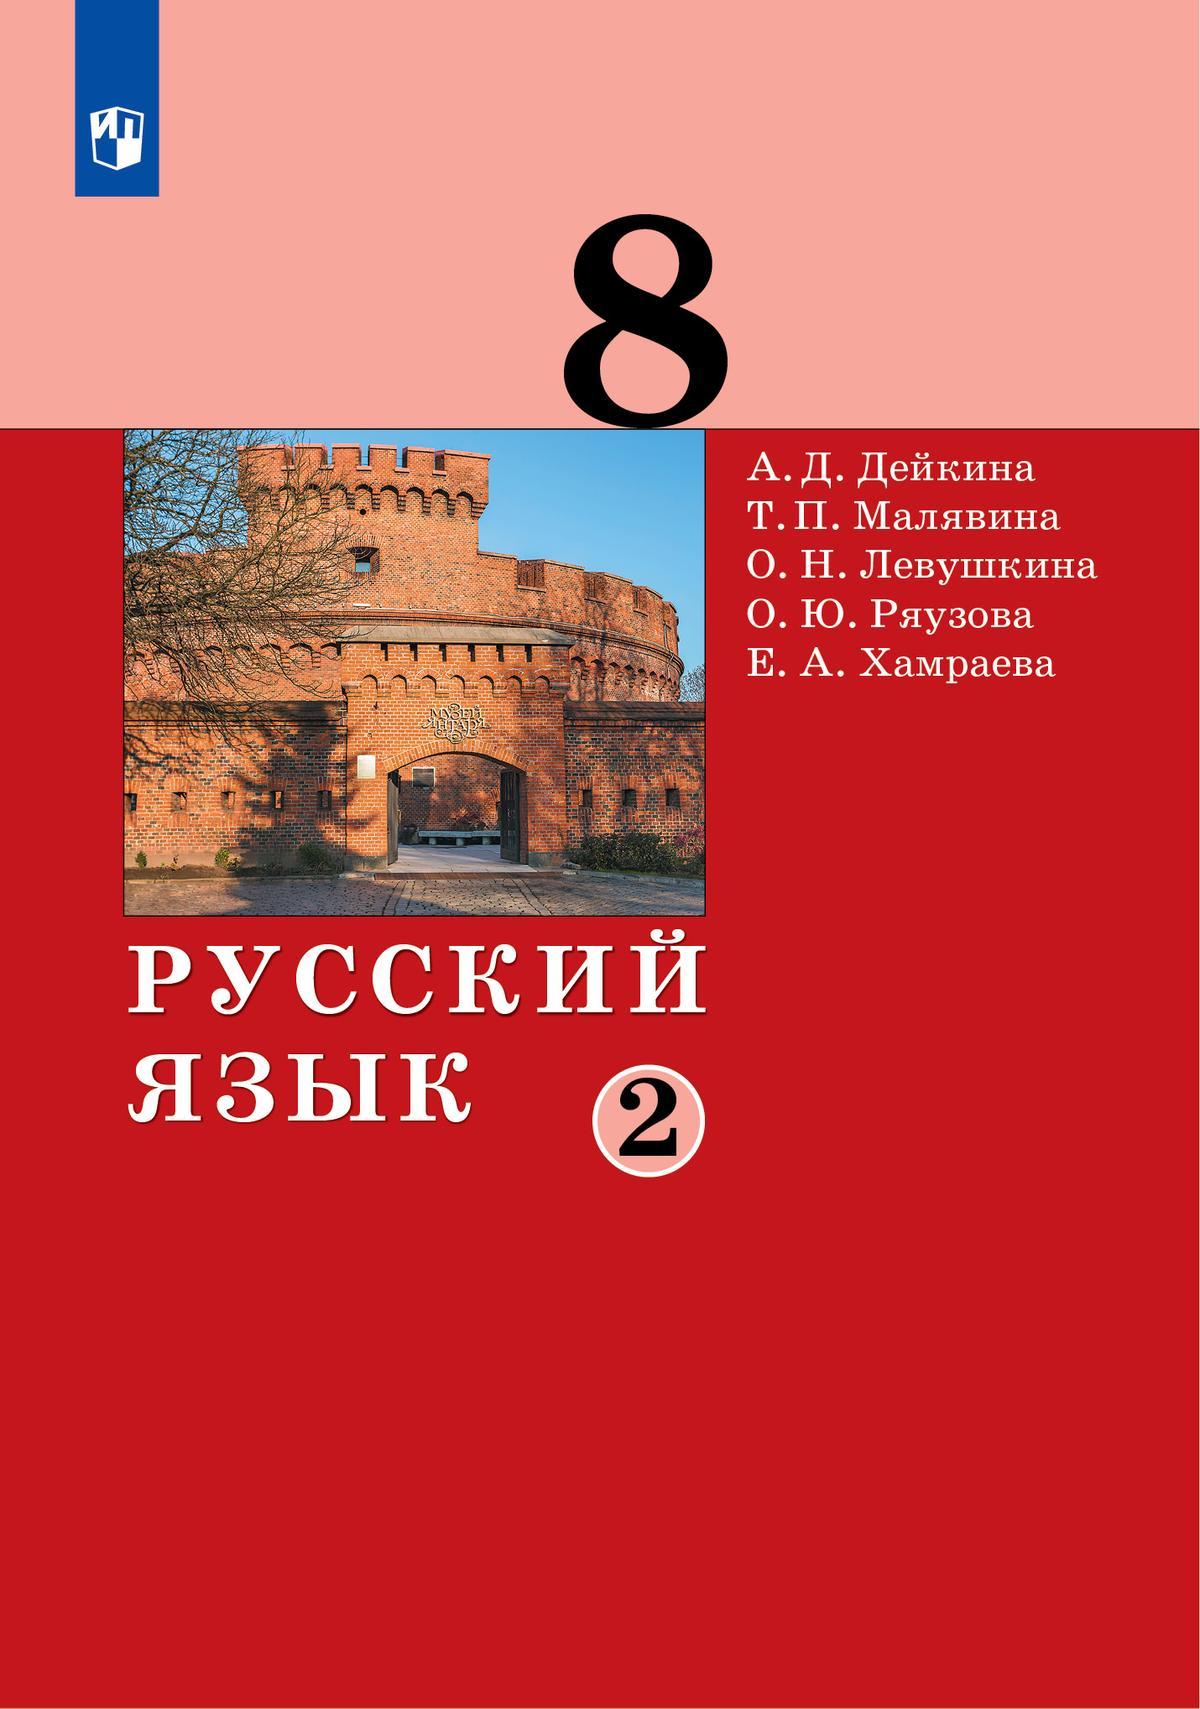 Русский язык. 8 класс. Электронная форма учебника. 2 ч. Часть 2 1